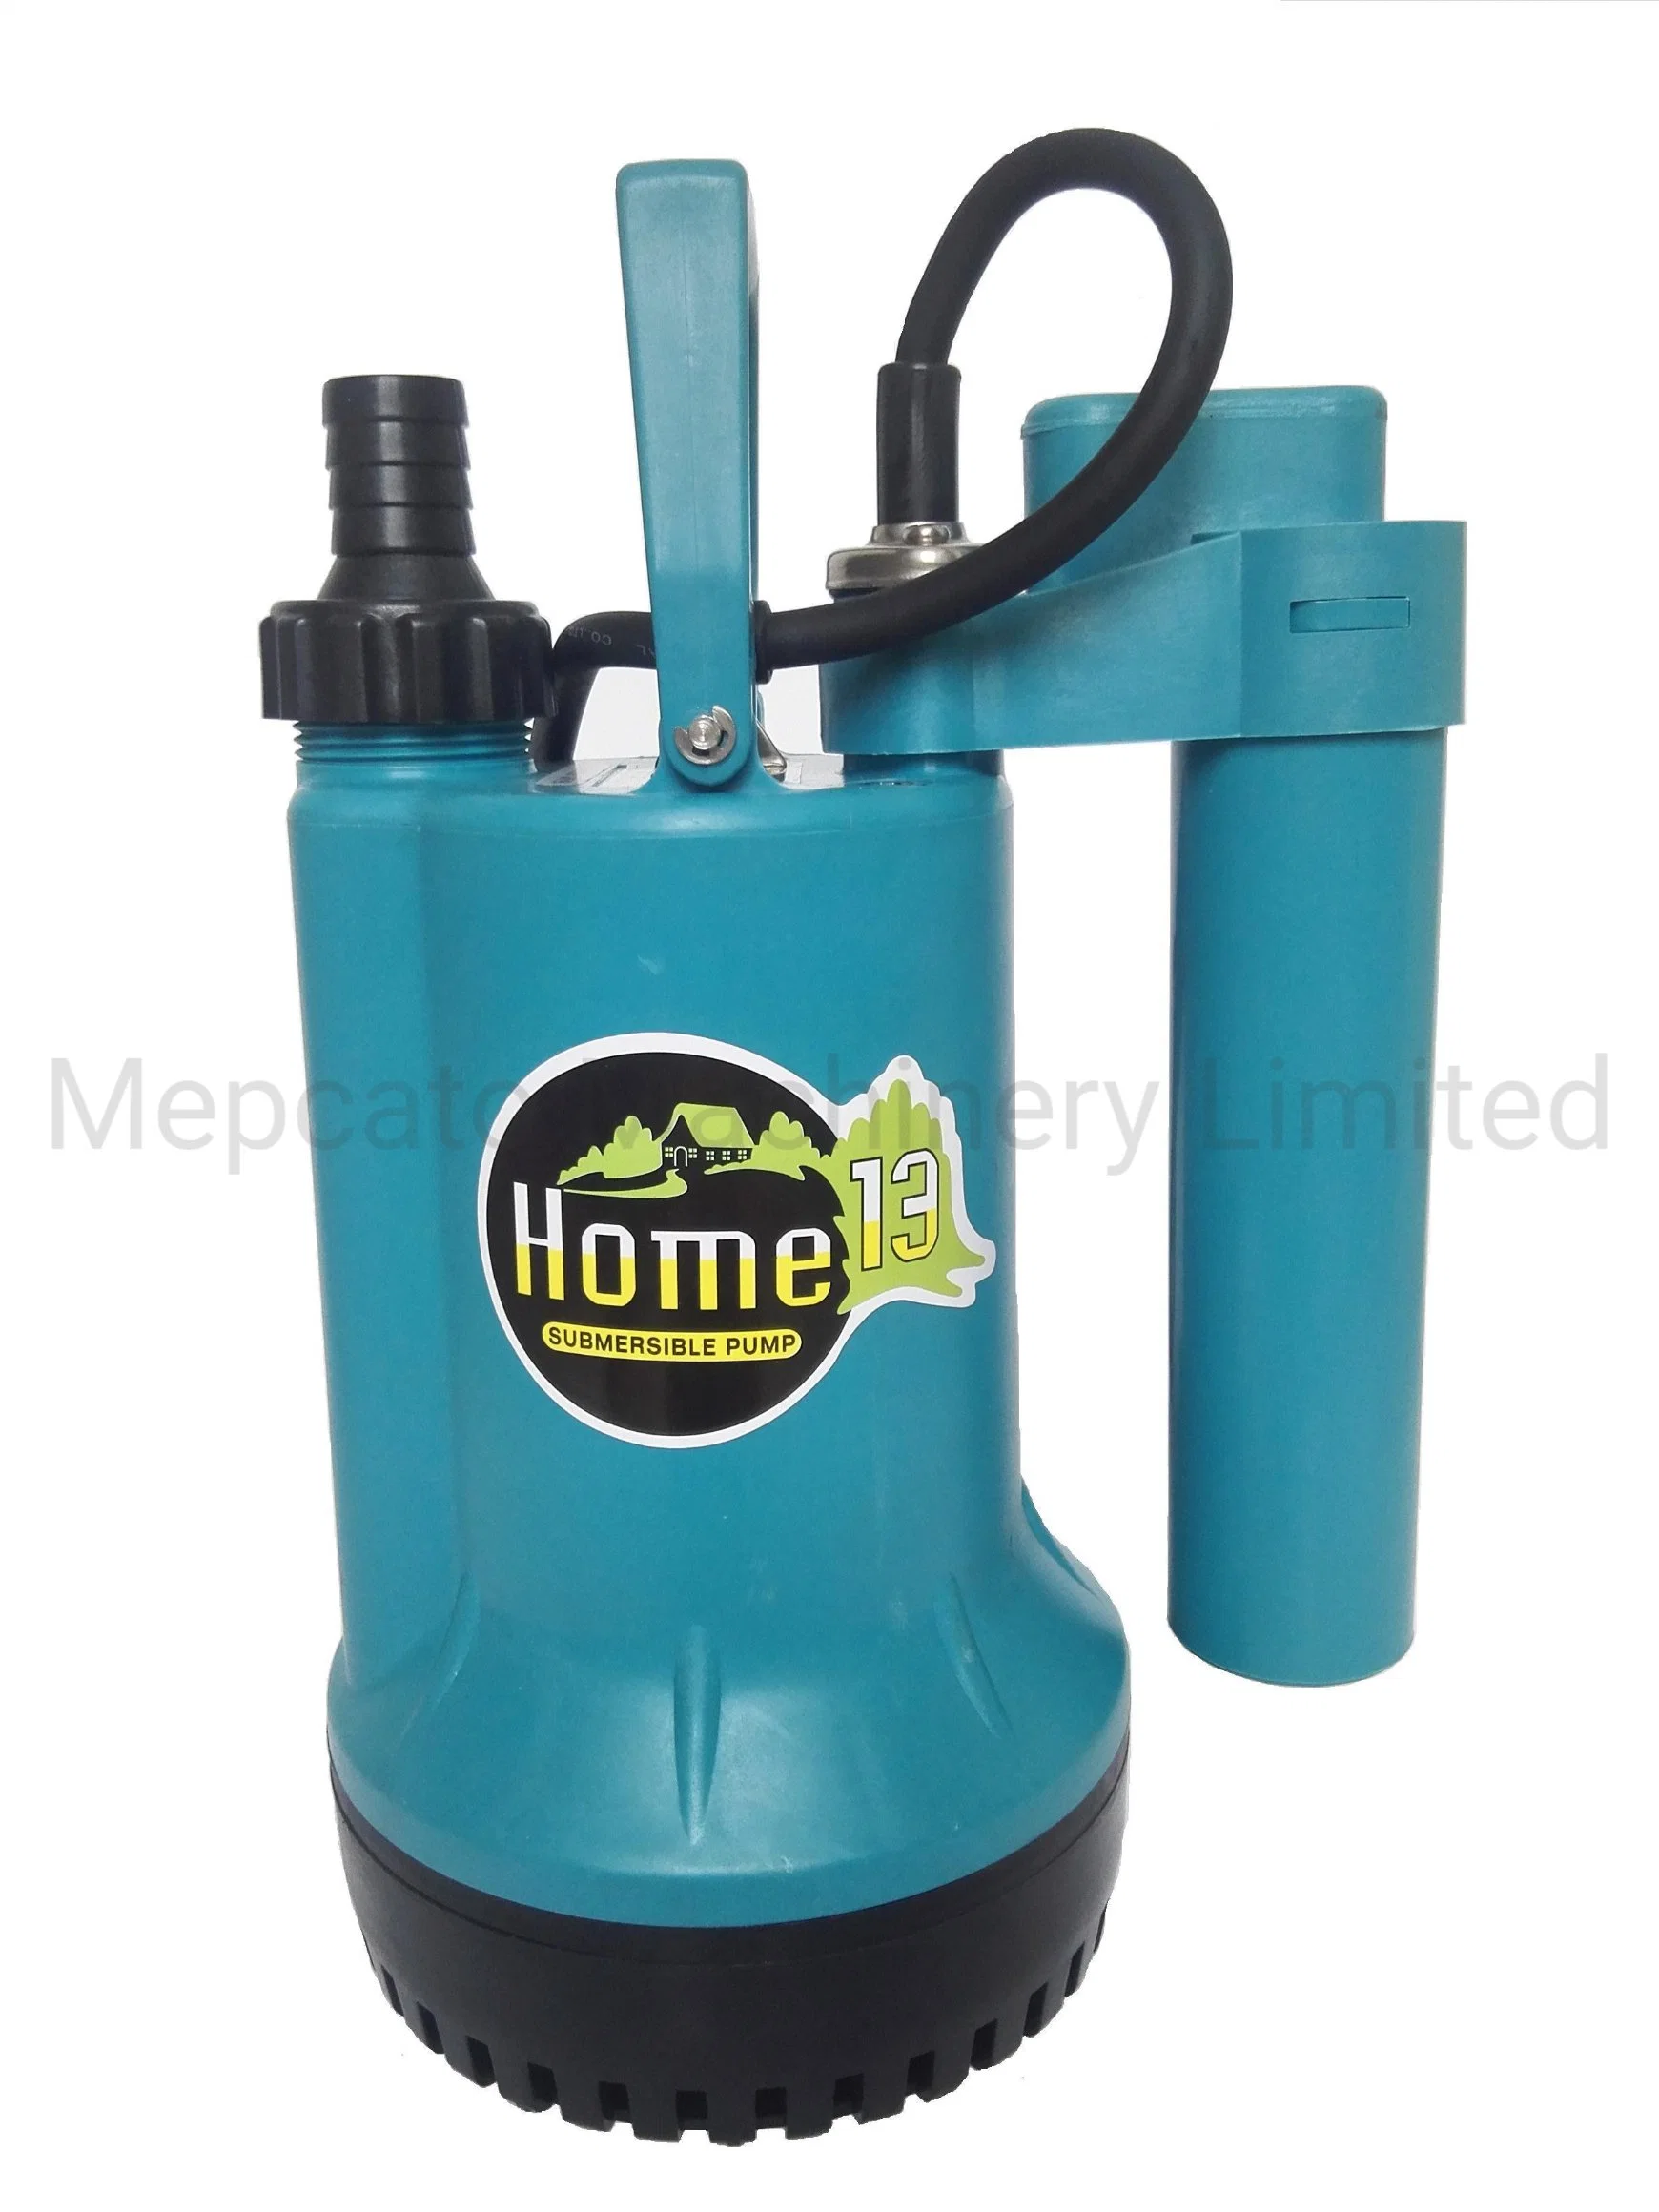 Pompe à eau submersible en plastique portable pour usage domestique avec interrupteur à flotteur pour l'arrosage du jardin, le lavage de voiture et la vidange de sous-sol (série domestique).